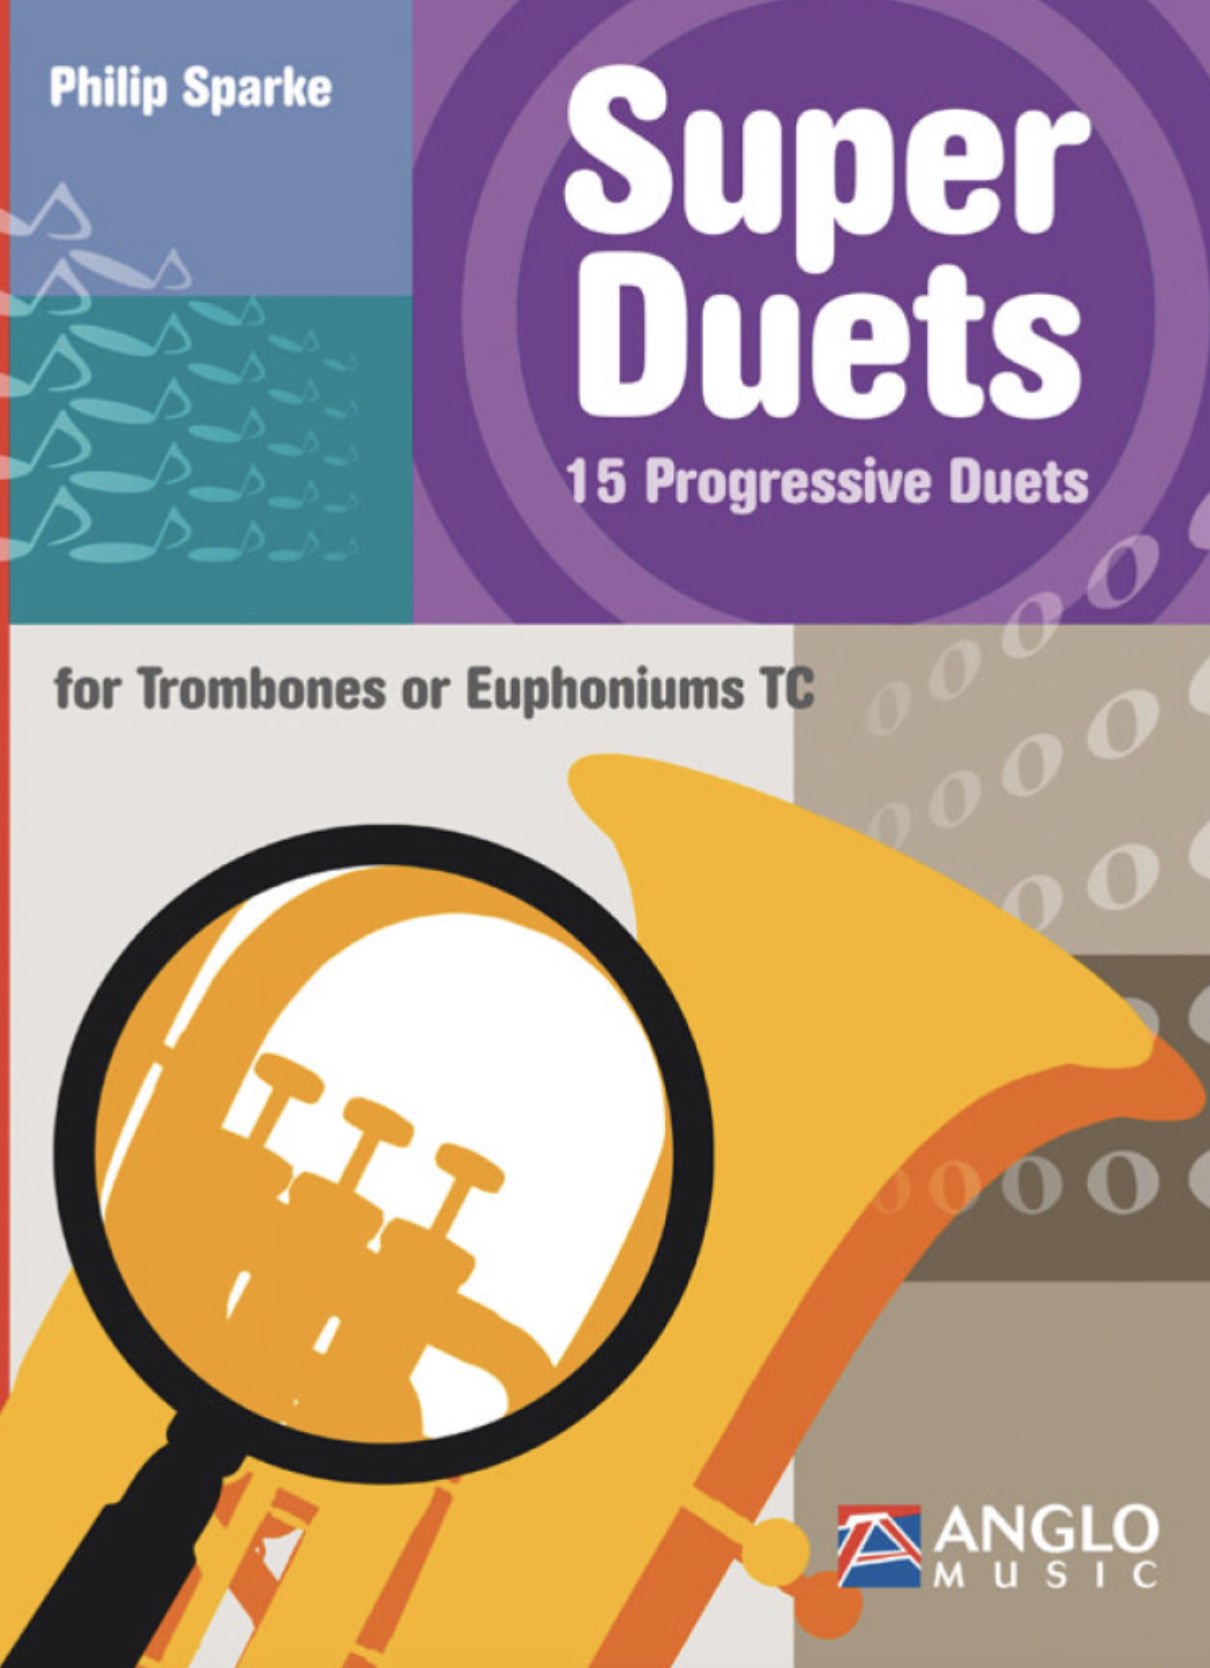 Super Duets - Philip Sparke - 15 progressive duets for trombones or euphonium - TC